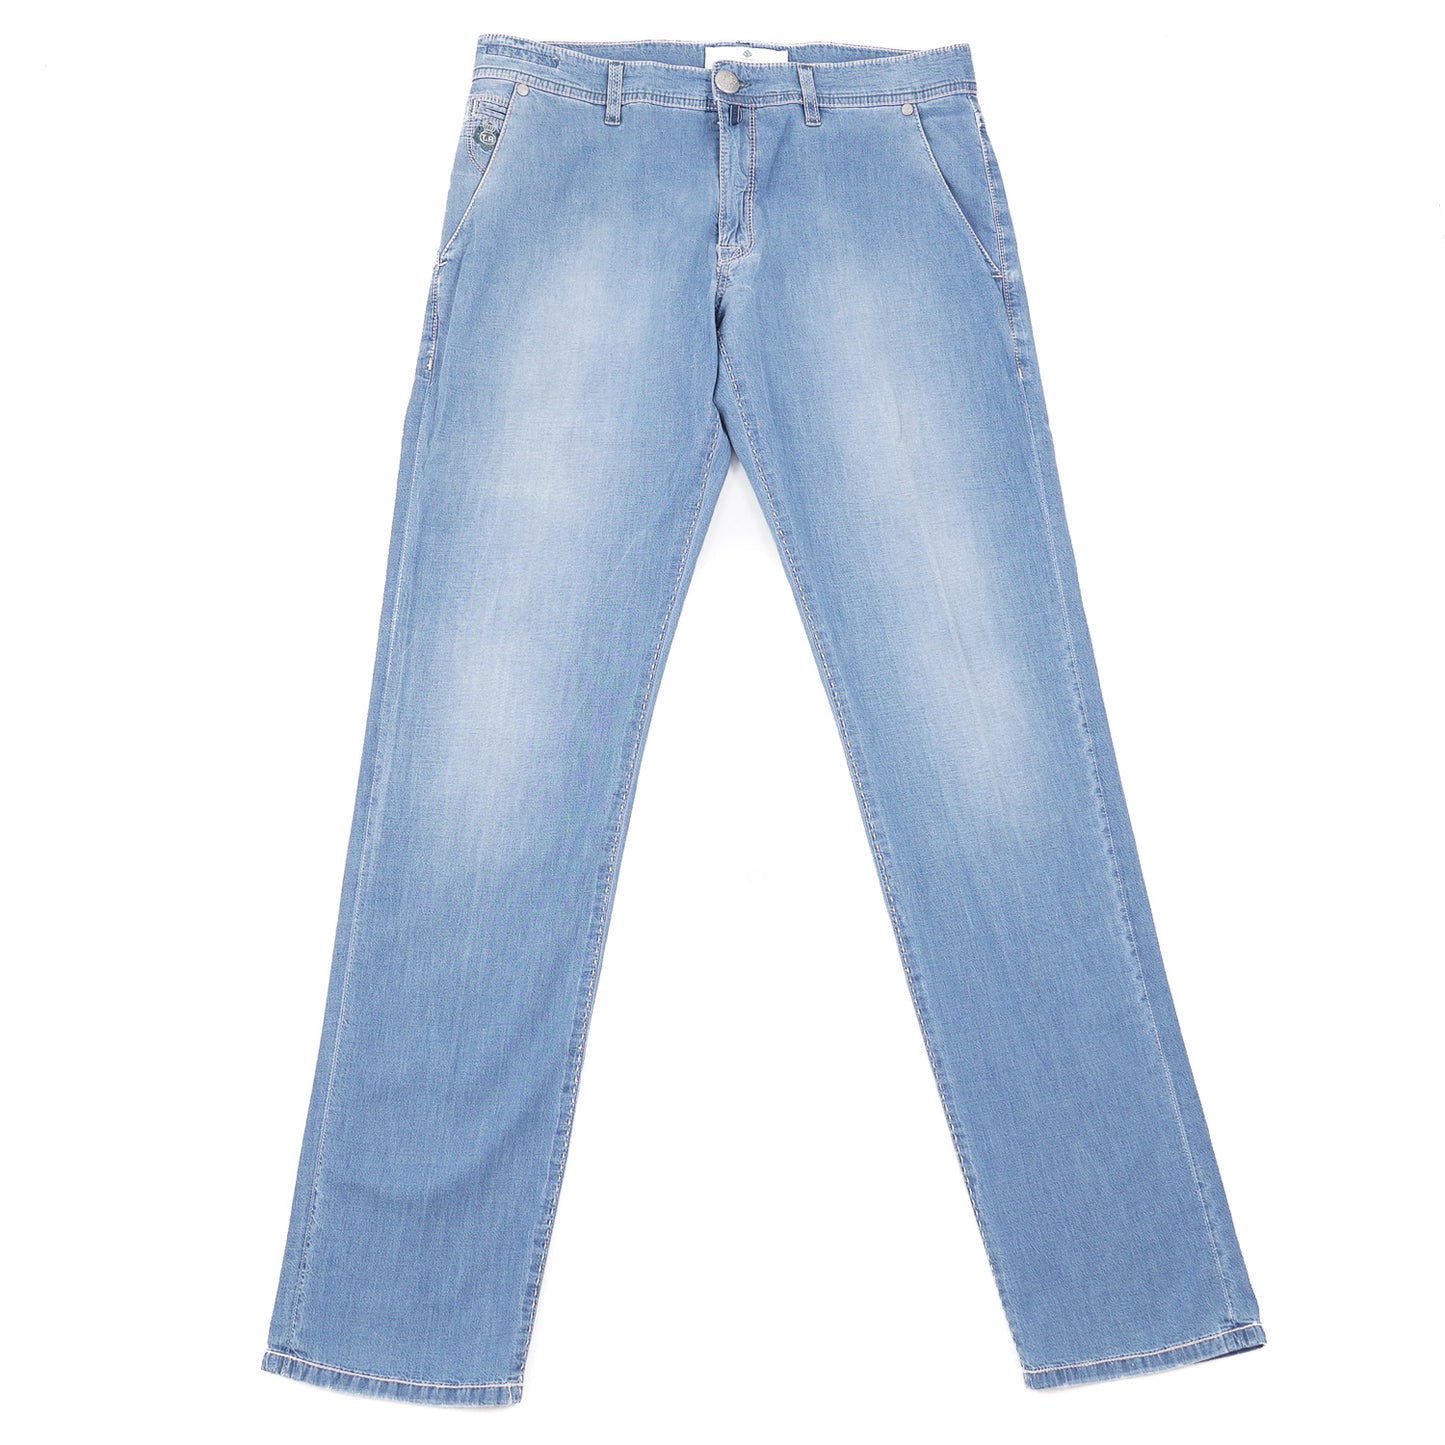 Luigi Borrelli Slim-Fit Lightweight Jeans - Top Shelf Apparel